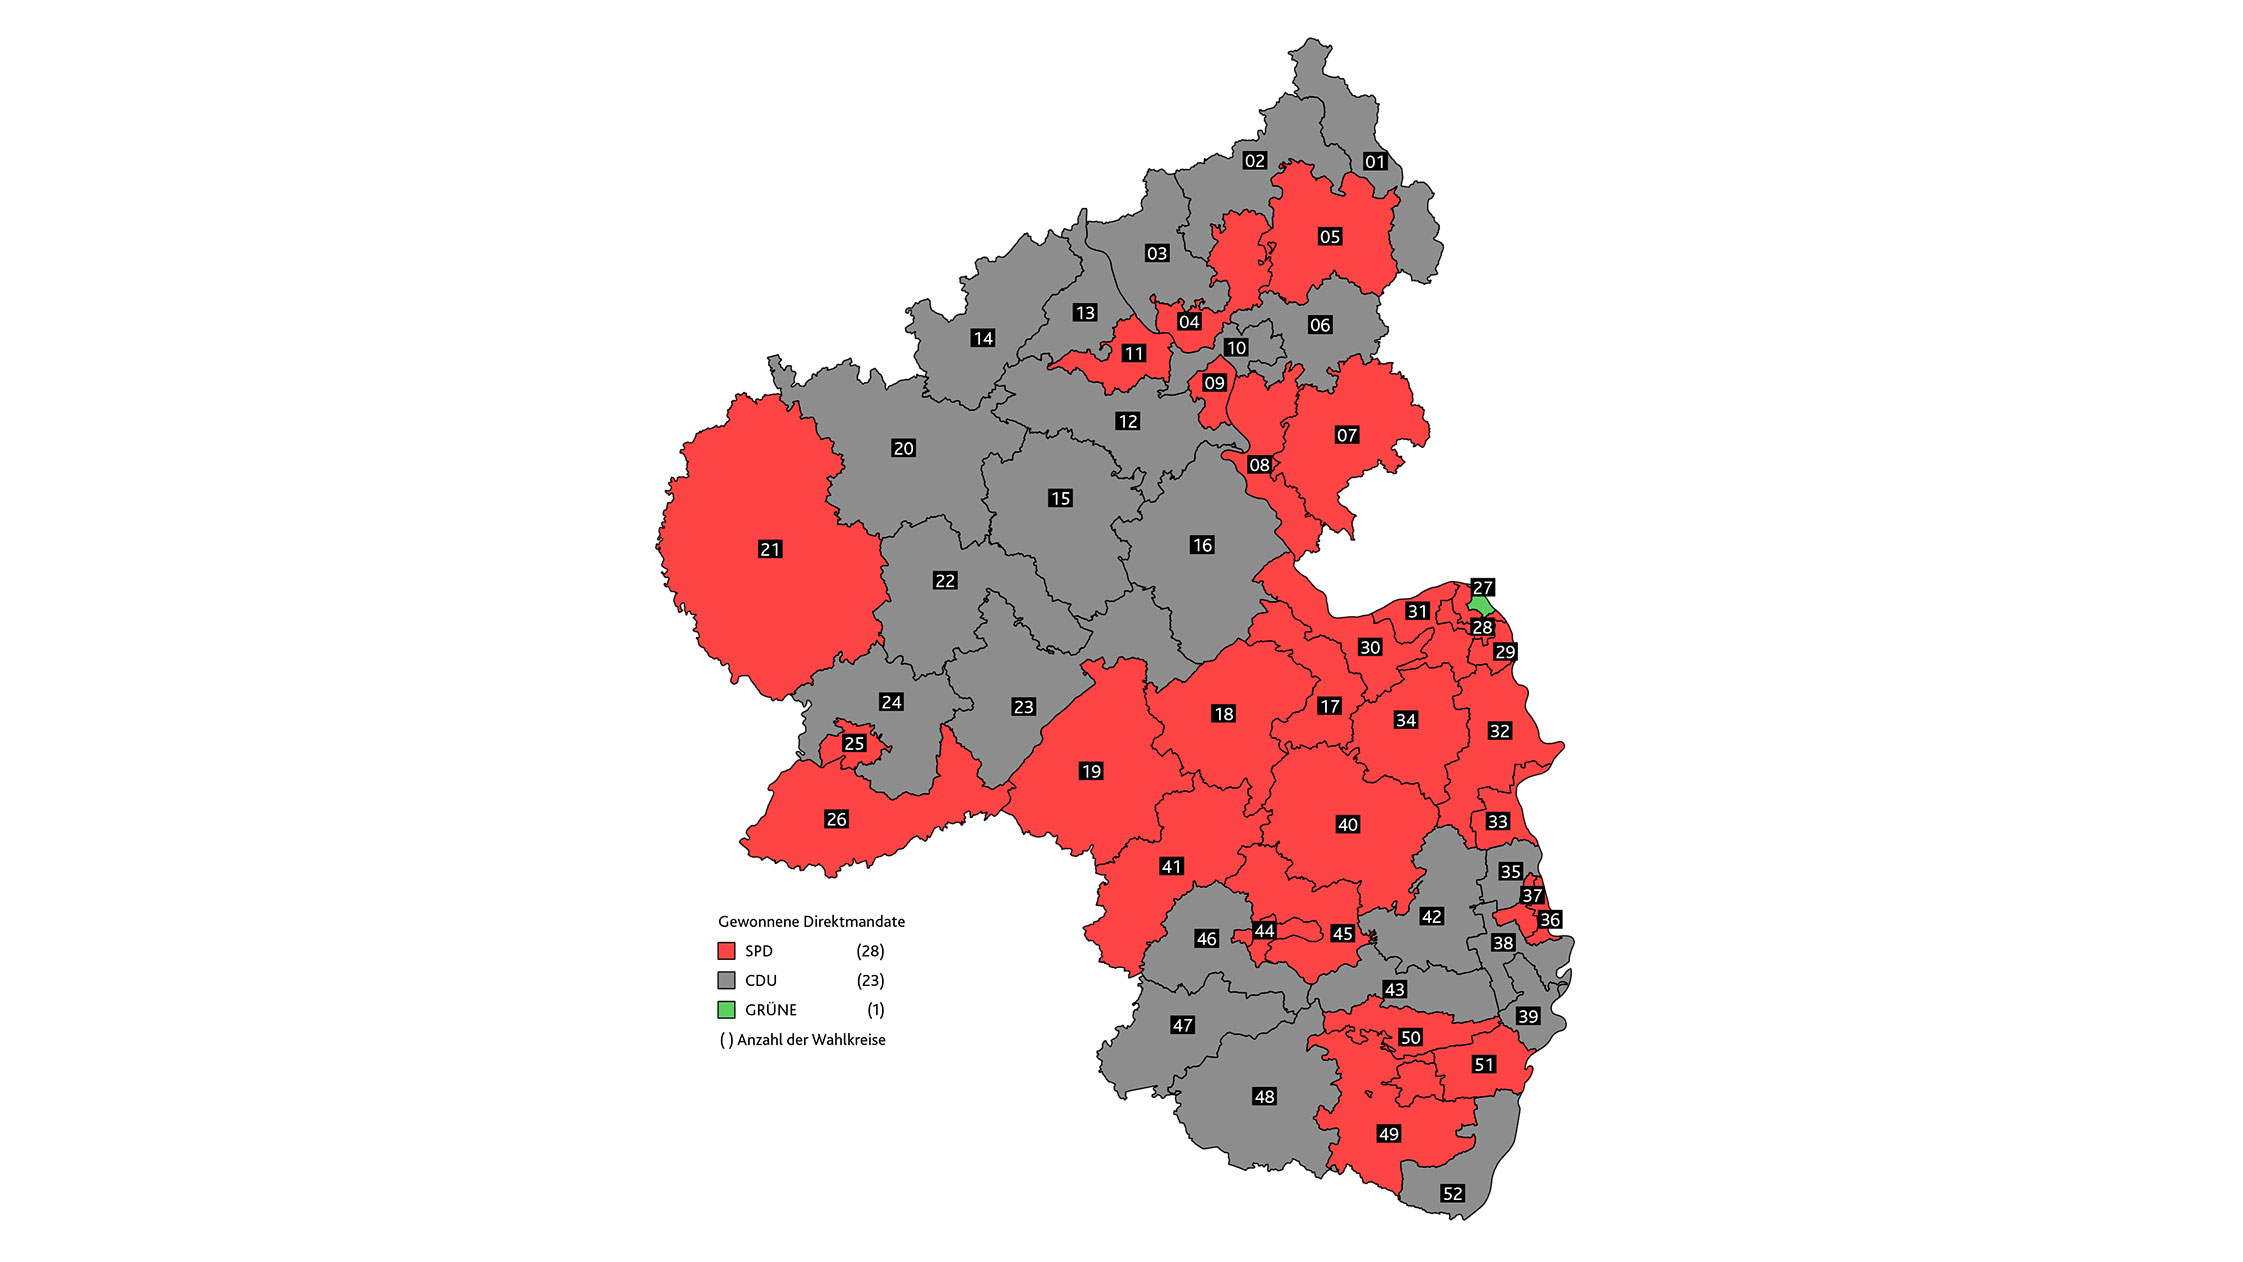 Die 52 Wahlkreise in Rheinland-Pfalz: Die SPD erhält 28 Direktmandate (rot markierte Wahlkreise), die CDU erhält 23 Direktmandate (grau markierte Wahlkreise) und BÜNDNIS 90/DIE GRÜNEN erhalten 1 Direktmandat (grün markierter Wahlkreis)